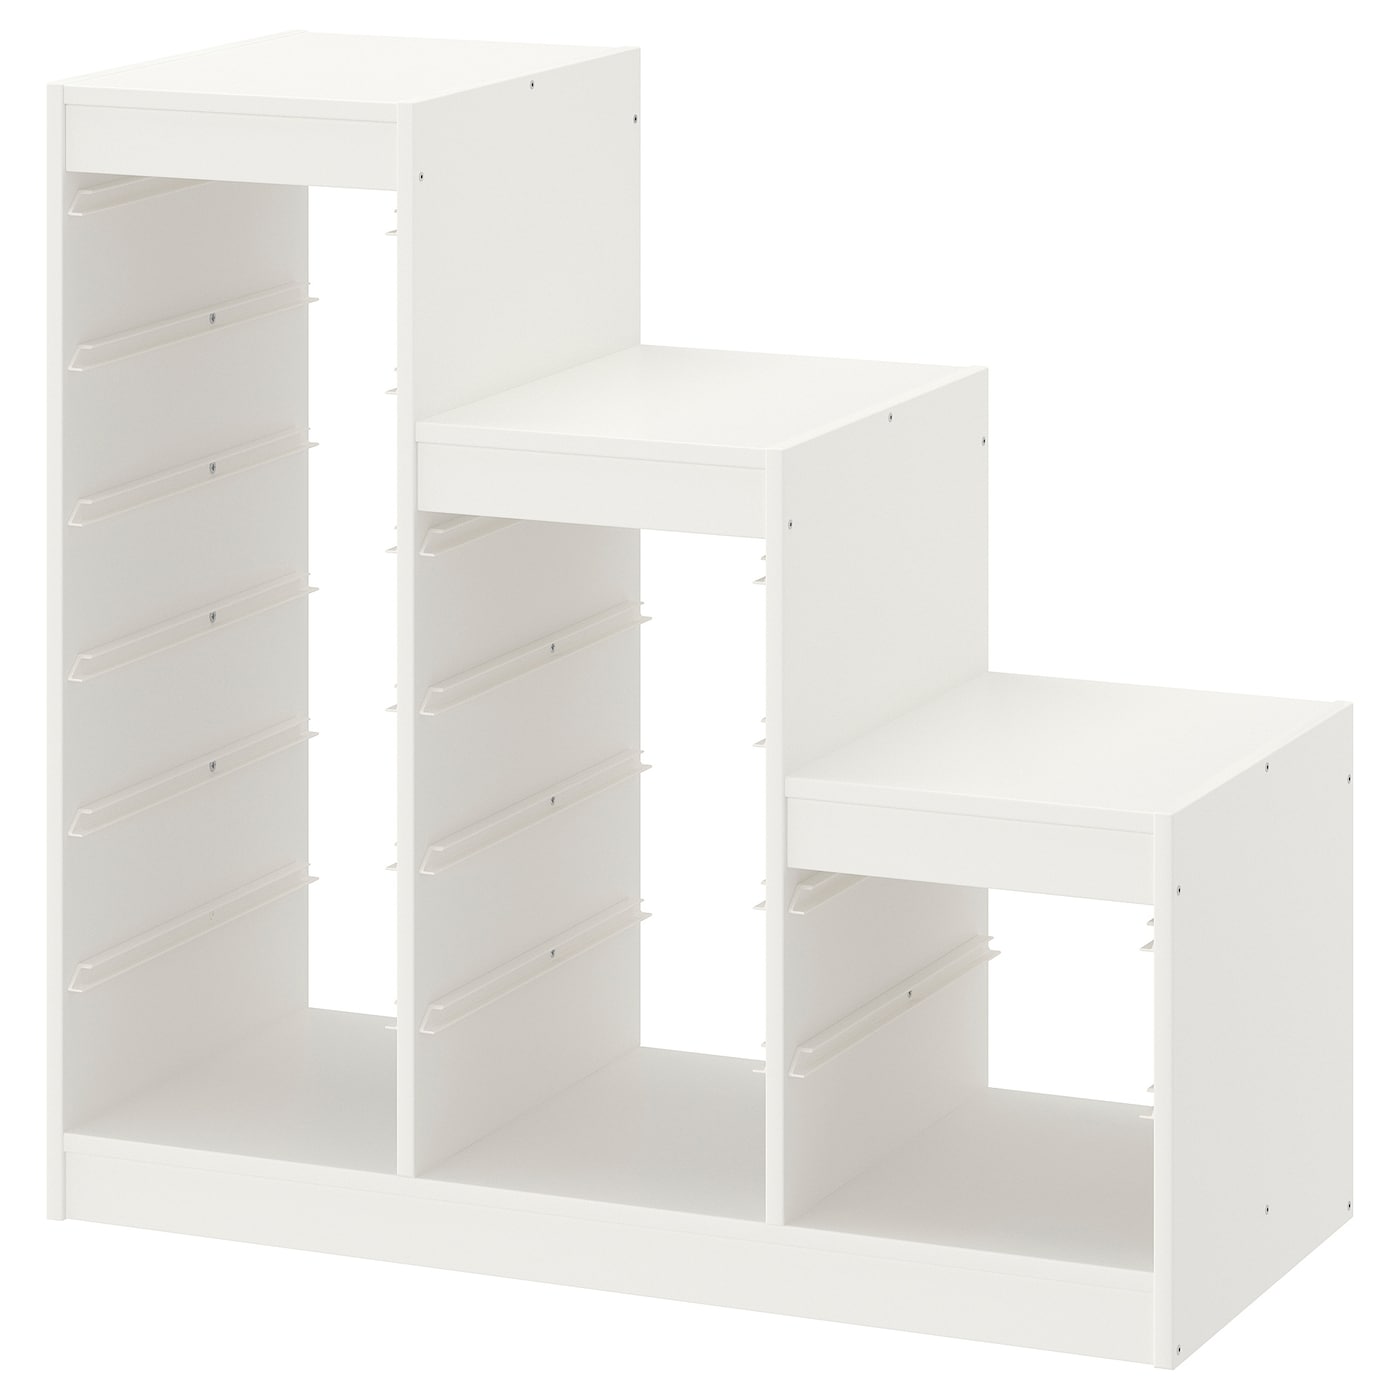 Каркас стеллажа - IKEA TROFAST, 99х44х94 см, белый, ТРУФАСТ ИКЕА